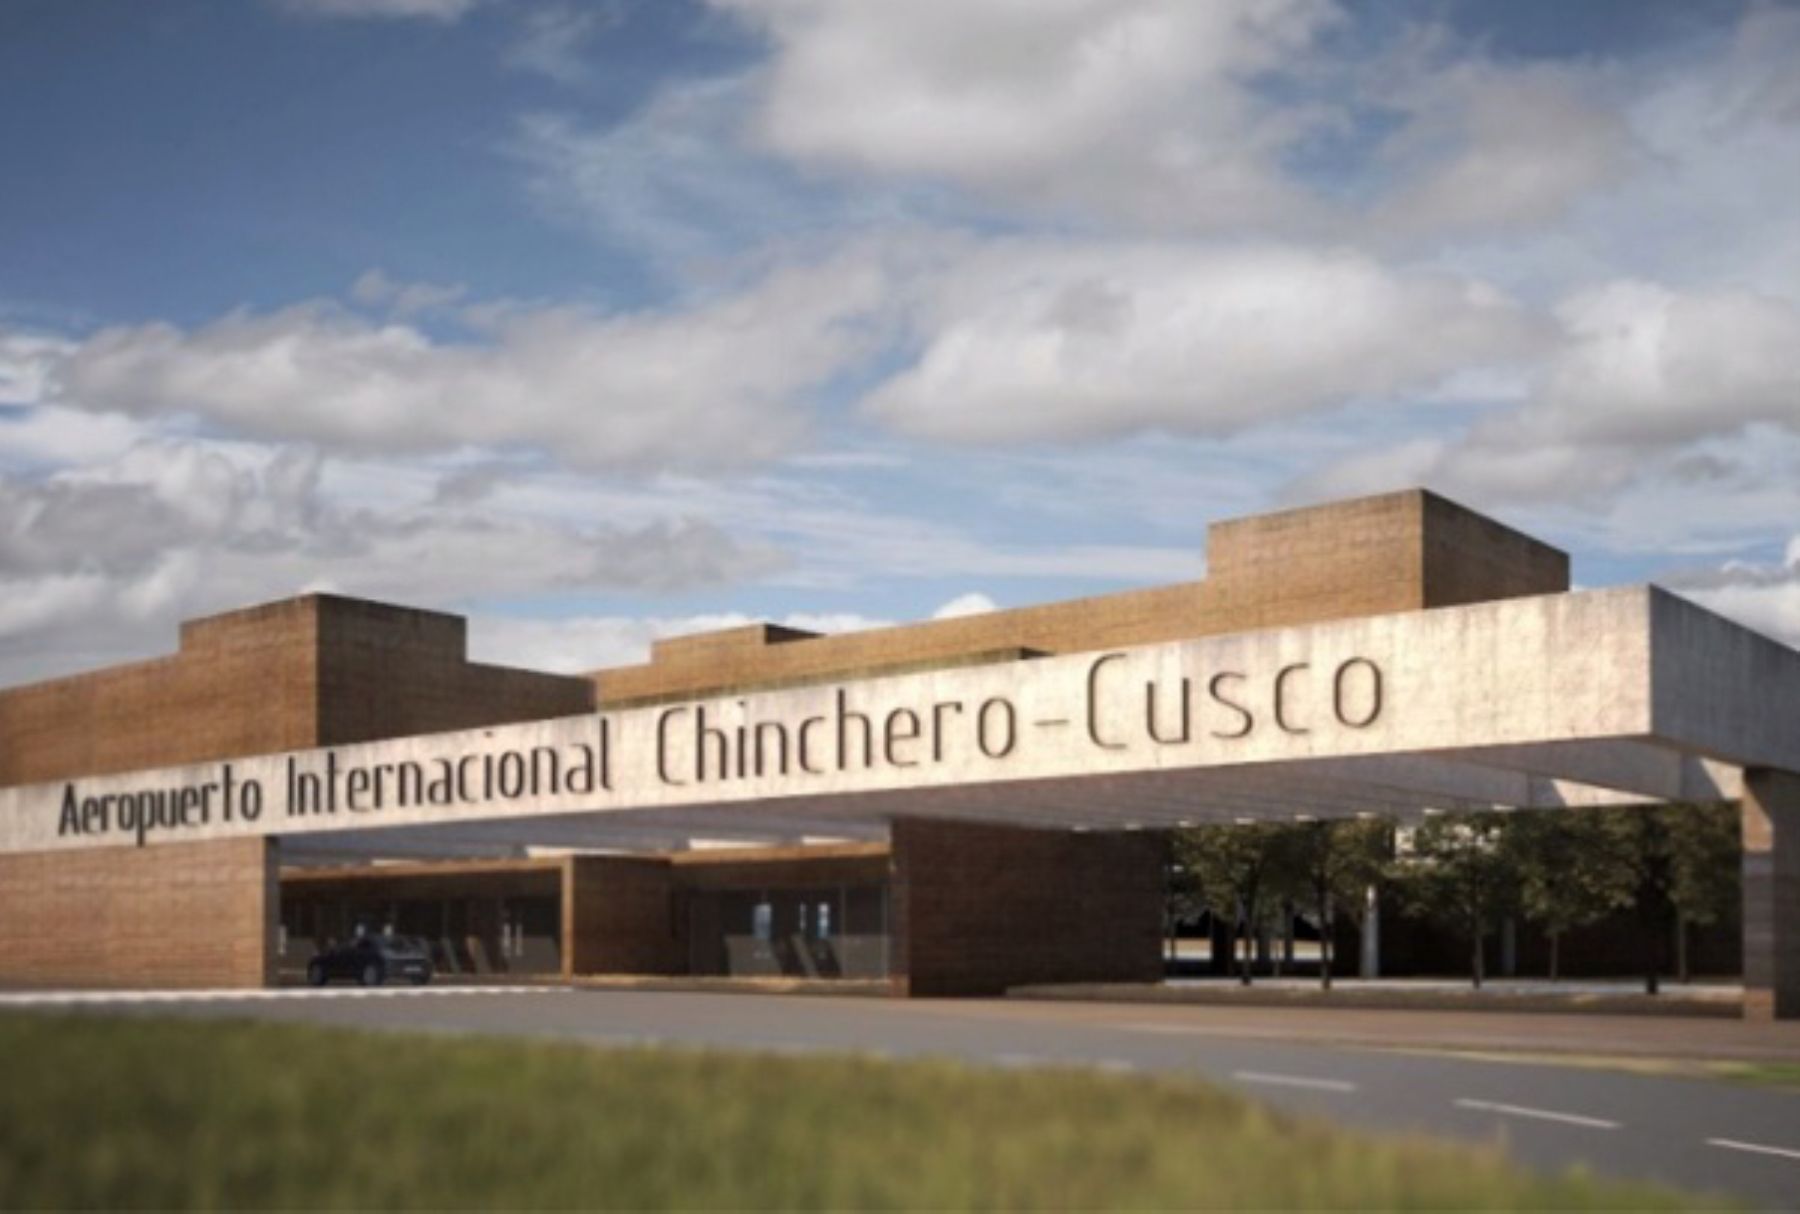 Maqueta del futuro aeropuerto internacional de Chinchero en el Cusco. ANDINA/Difusión